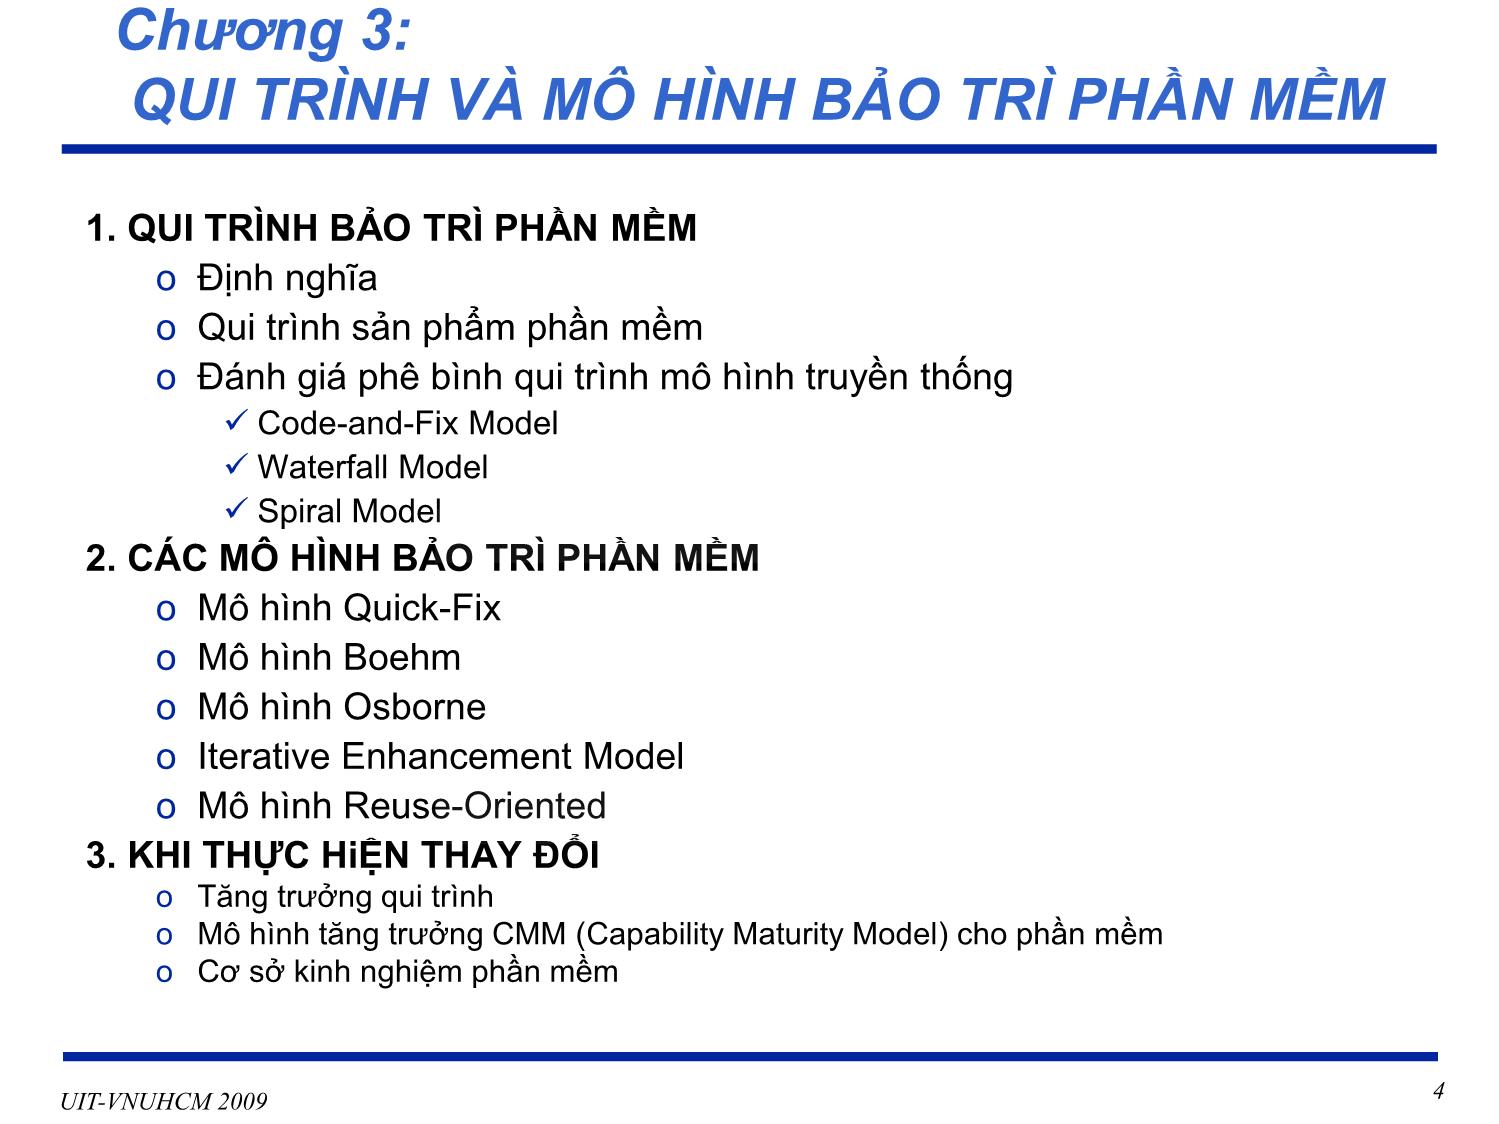 Bài giảng Phát triển vận hành bảo trì phần mềm - Chương 3: Qui trình và mô hình bảo trì phần mềm - Nguyễn Thị Thanh Trúc trang 4